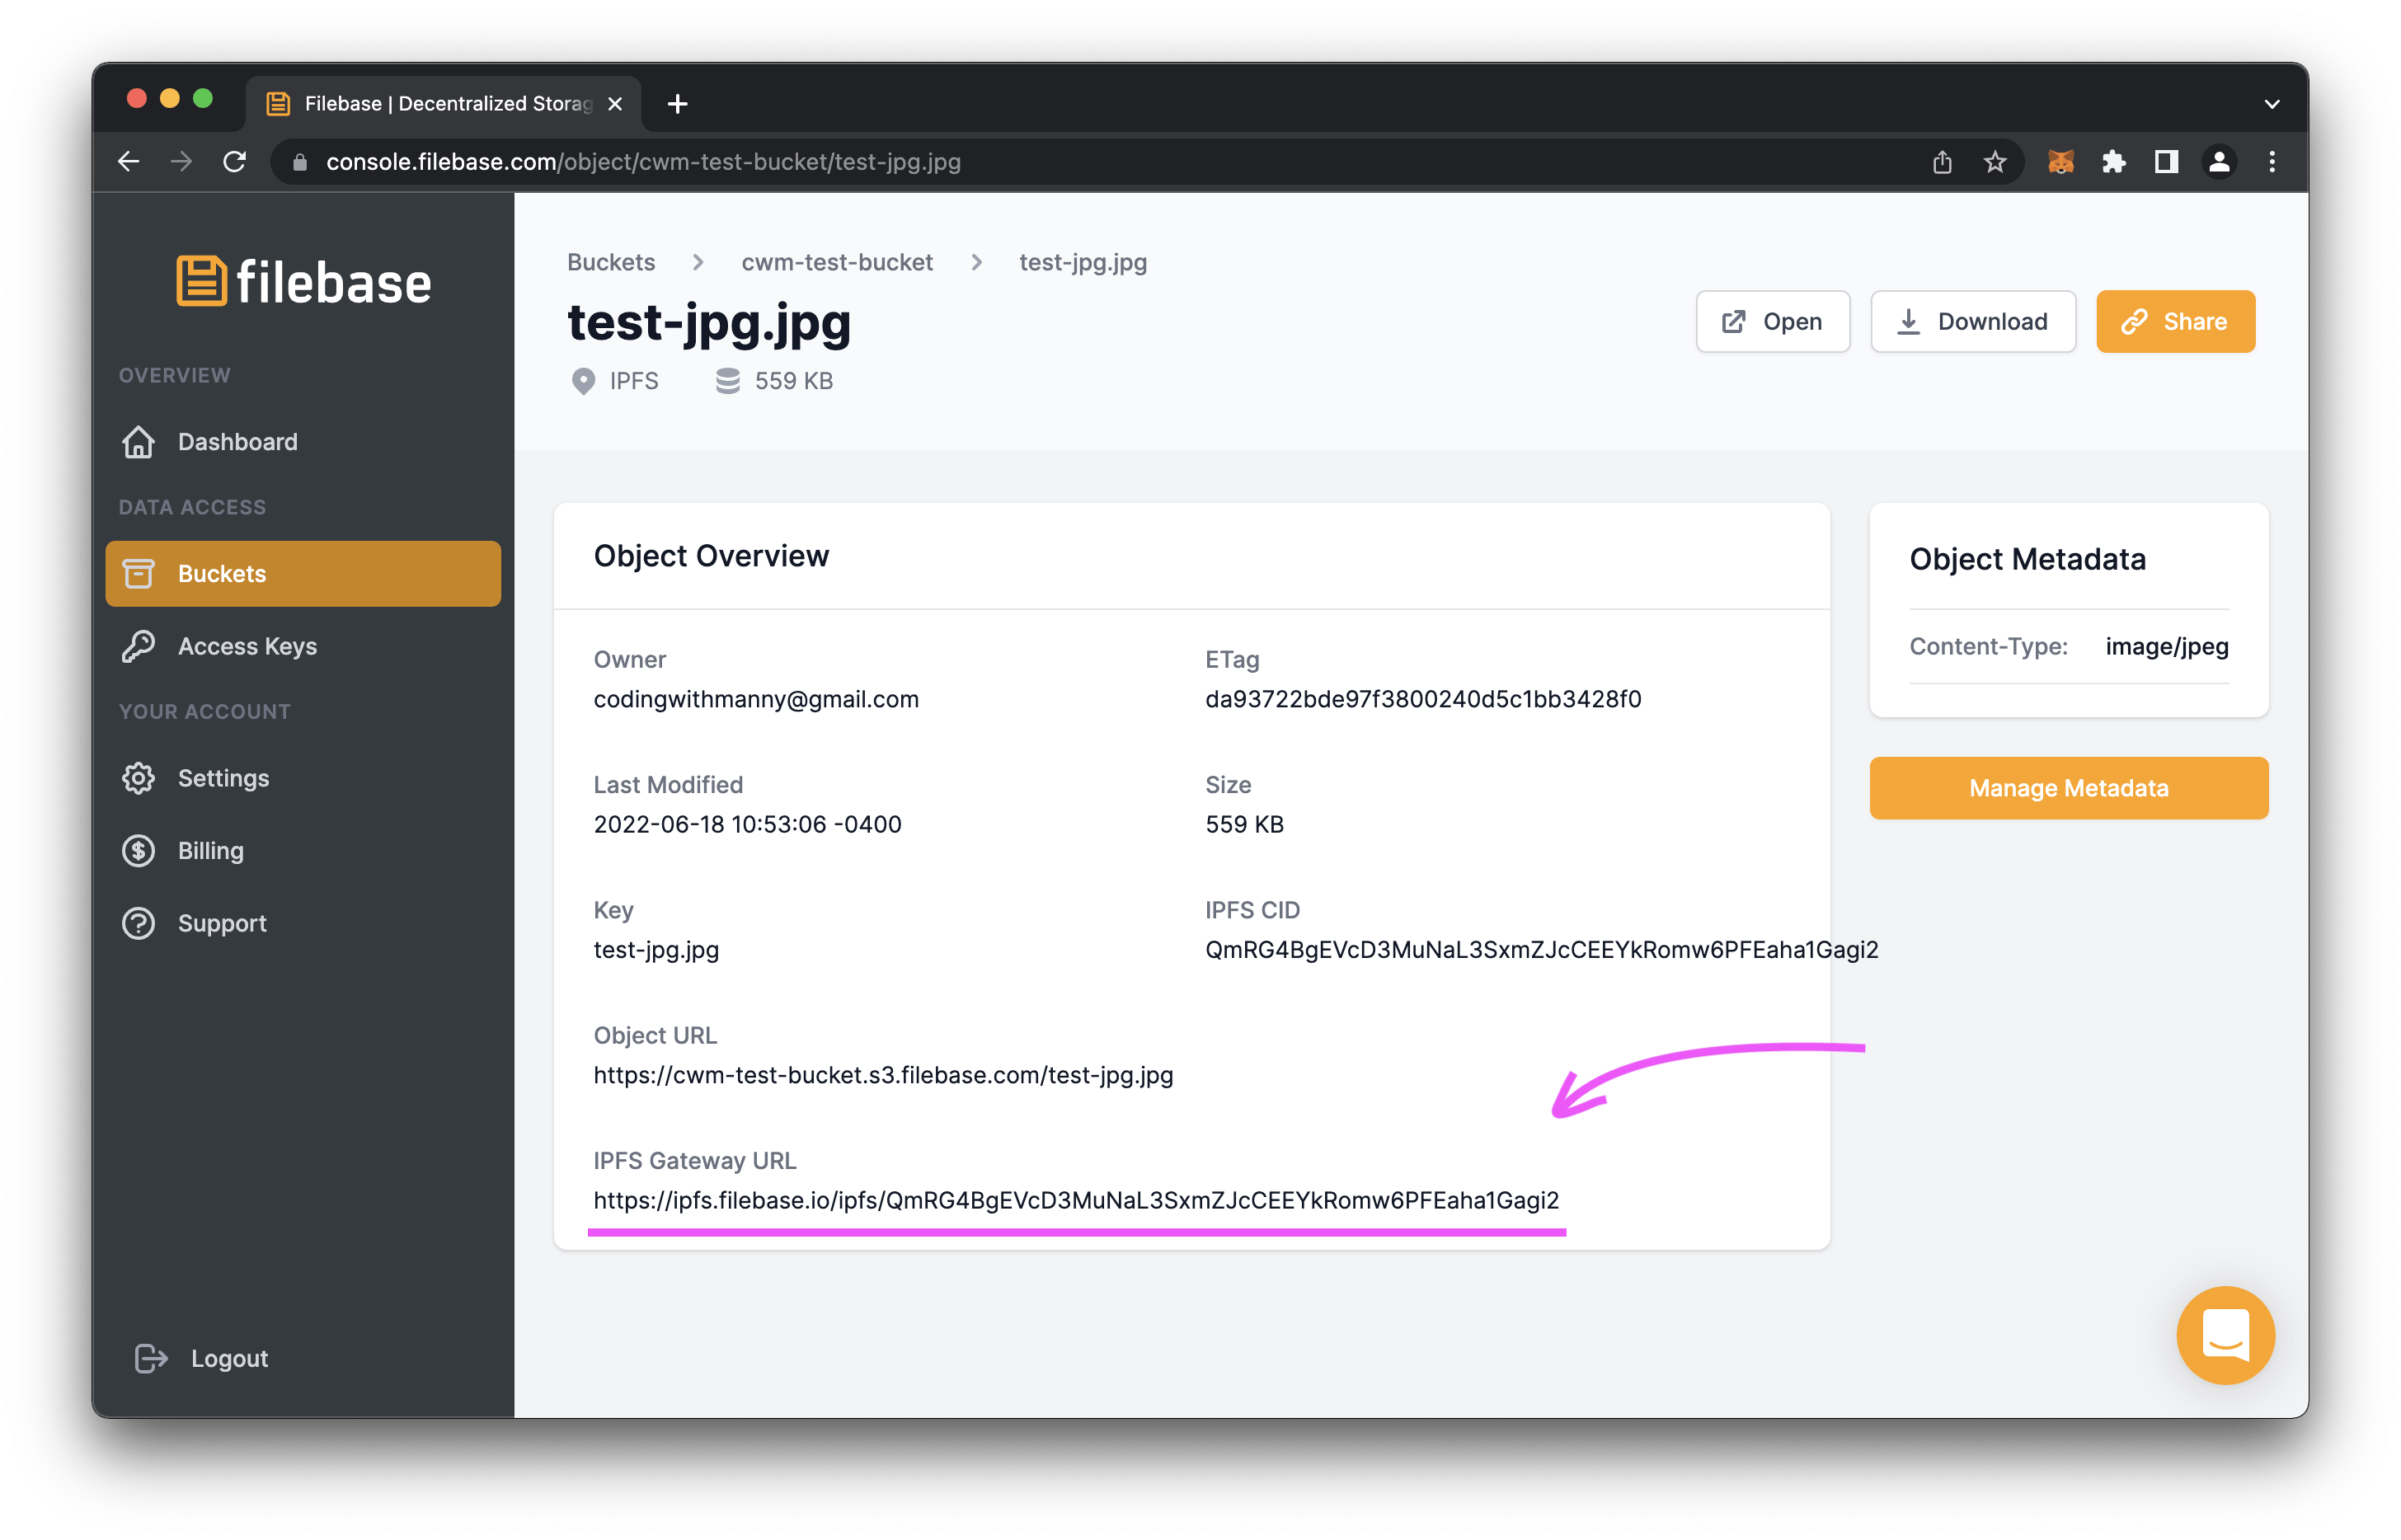 Filebase.com Test JPG Details